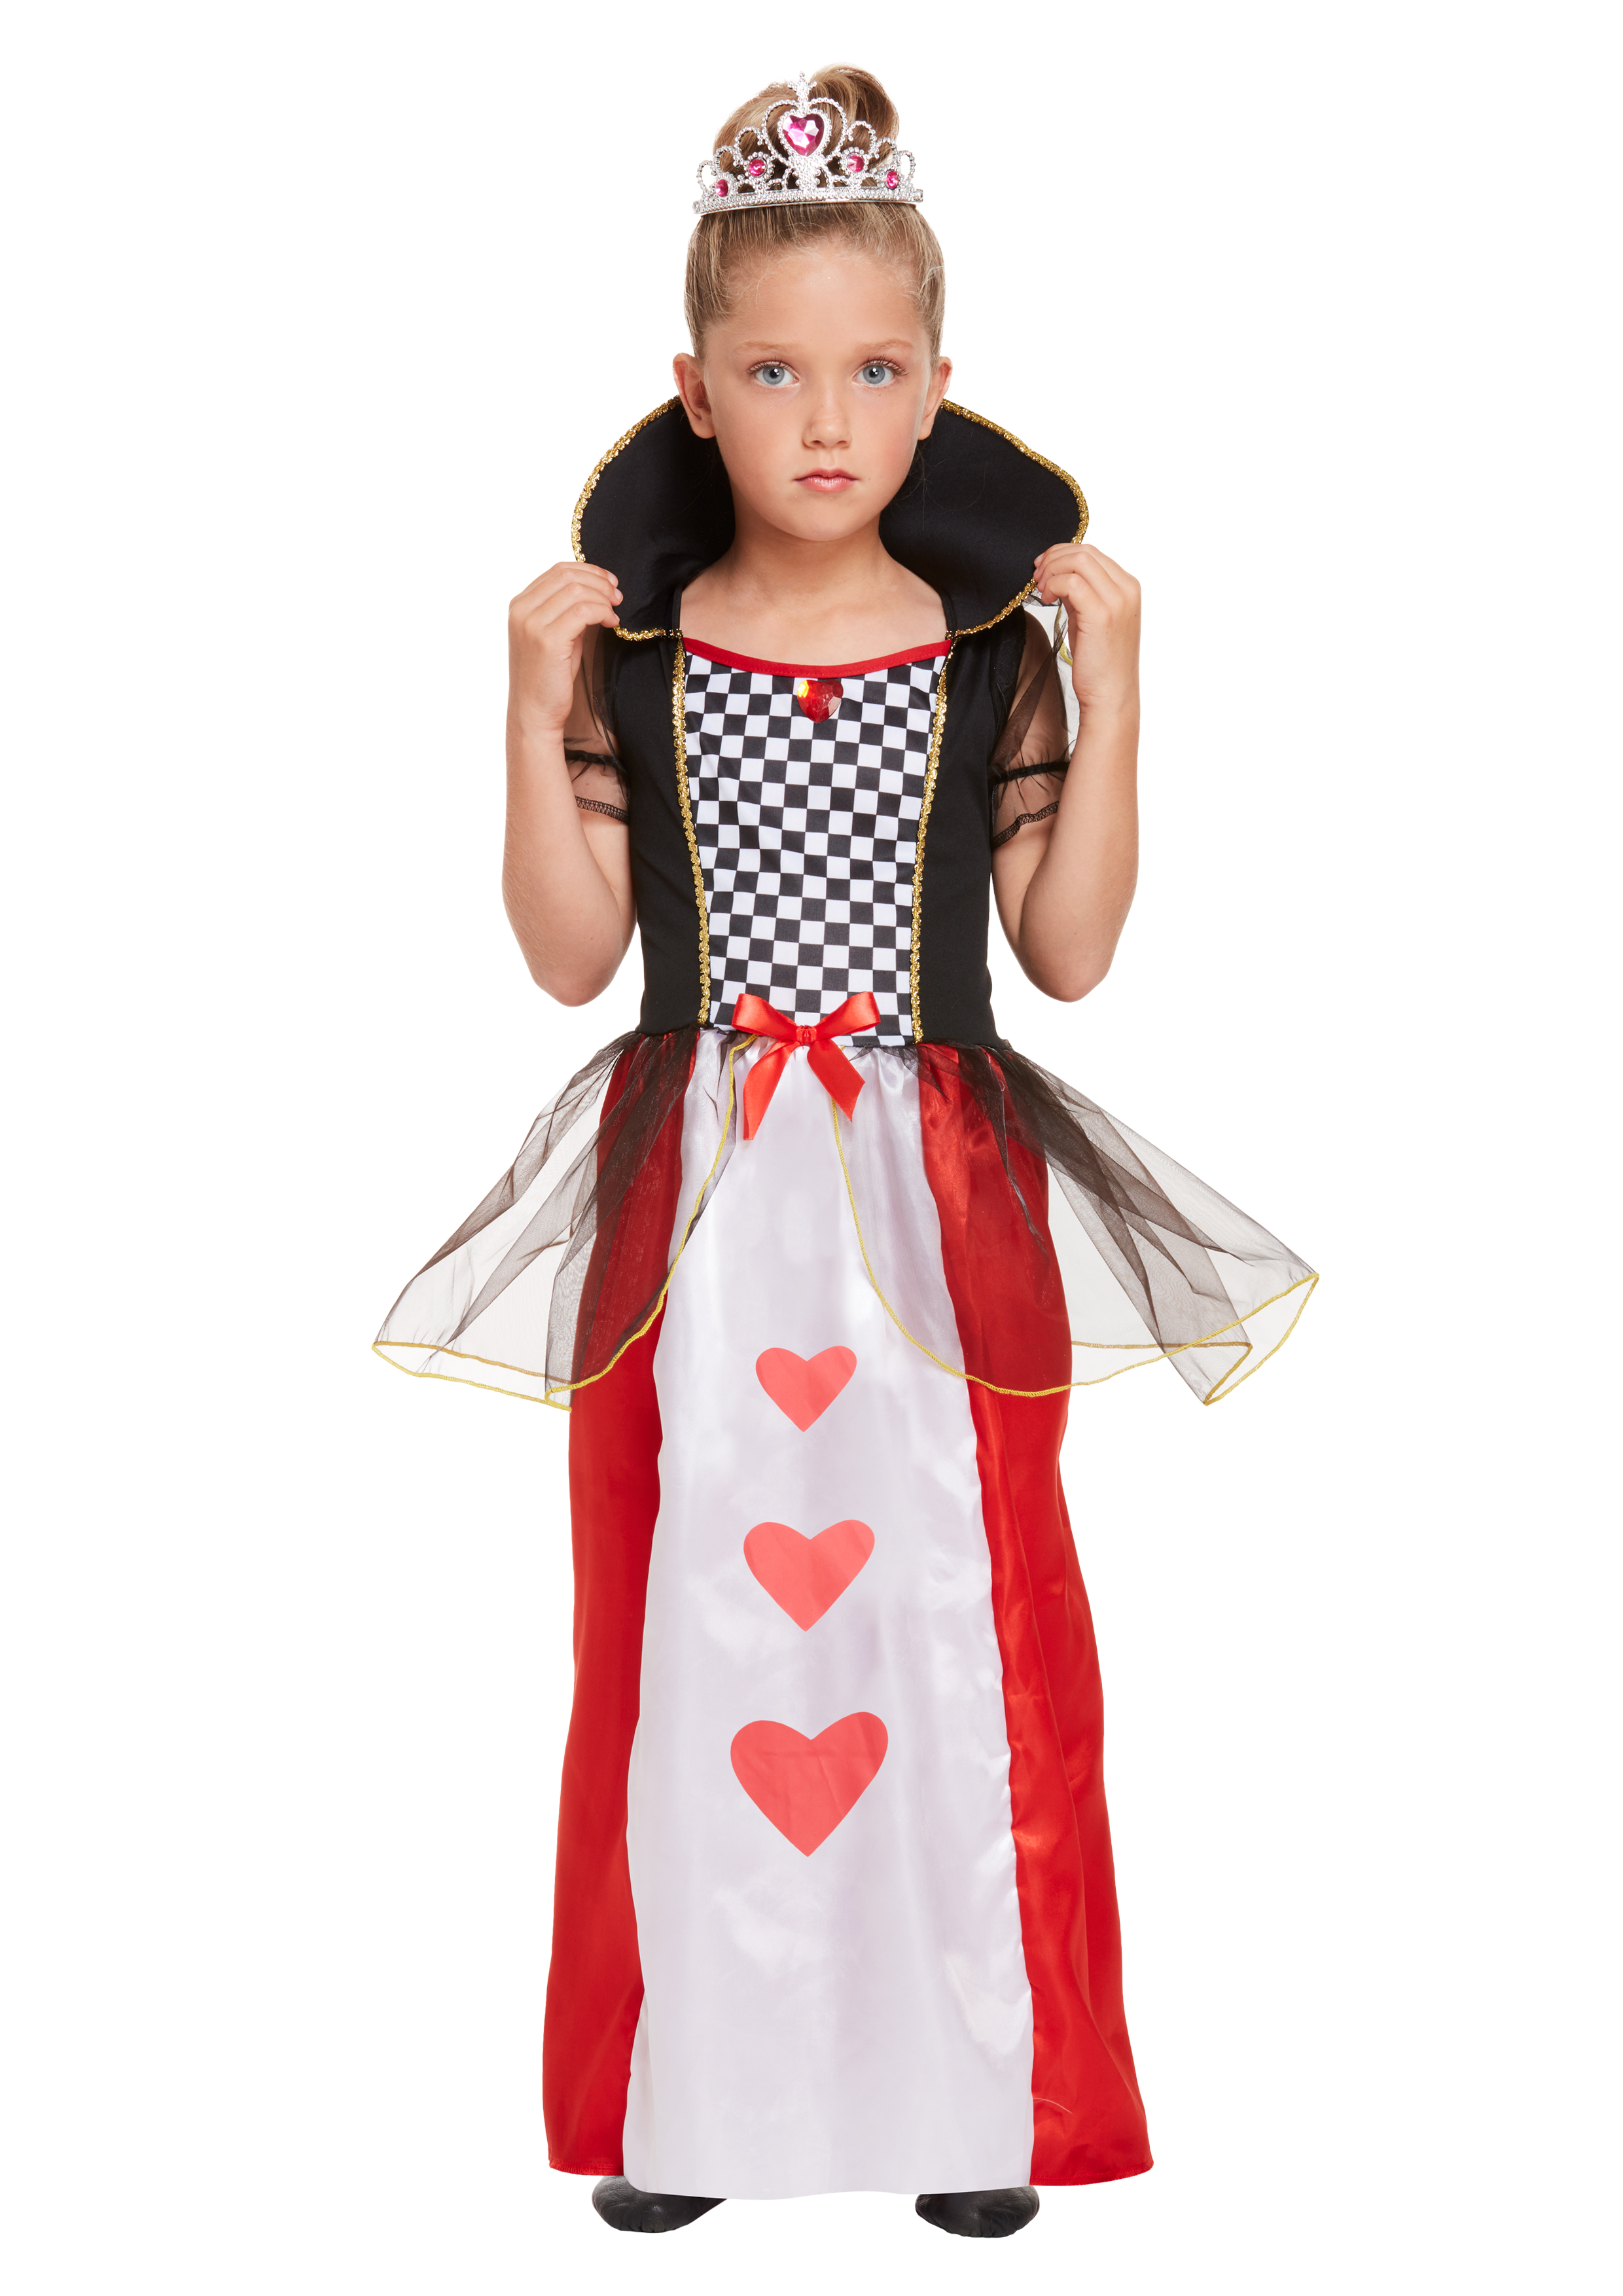 Children's Queen of Hearts Costume (Small / 4-6 Years) : Henbrandt Ltd